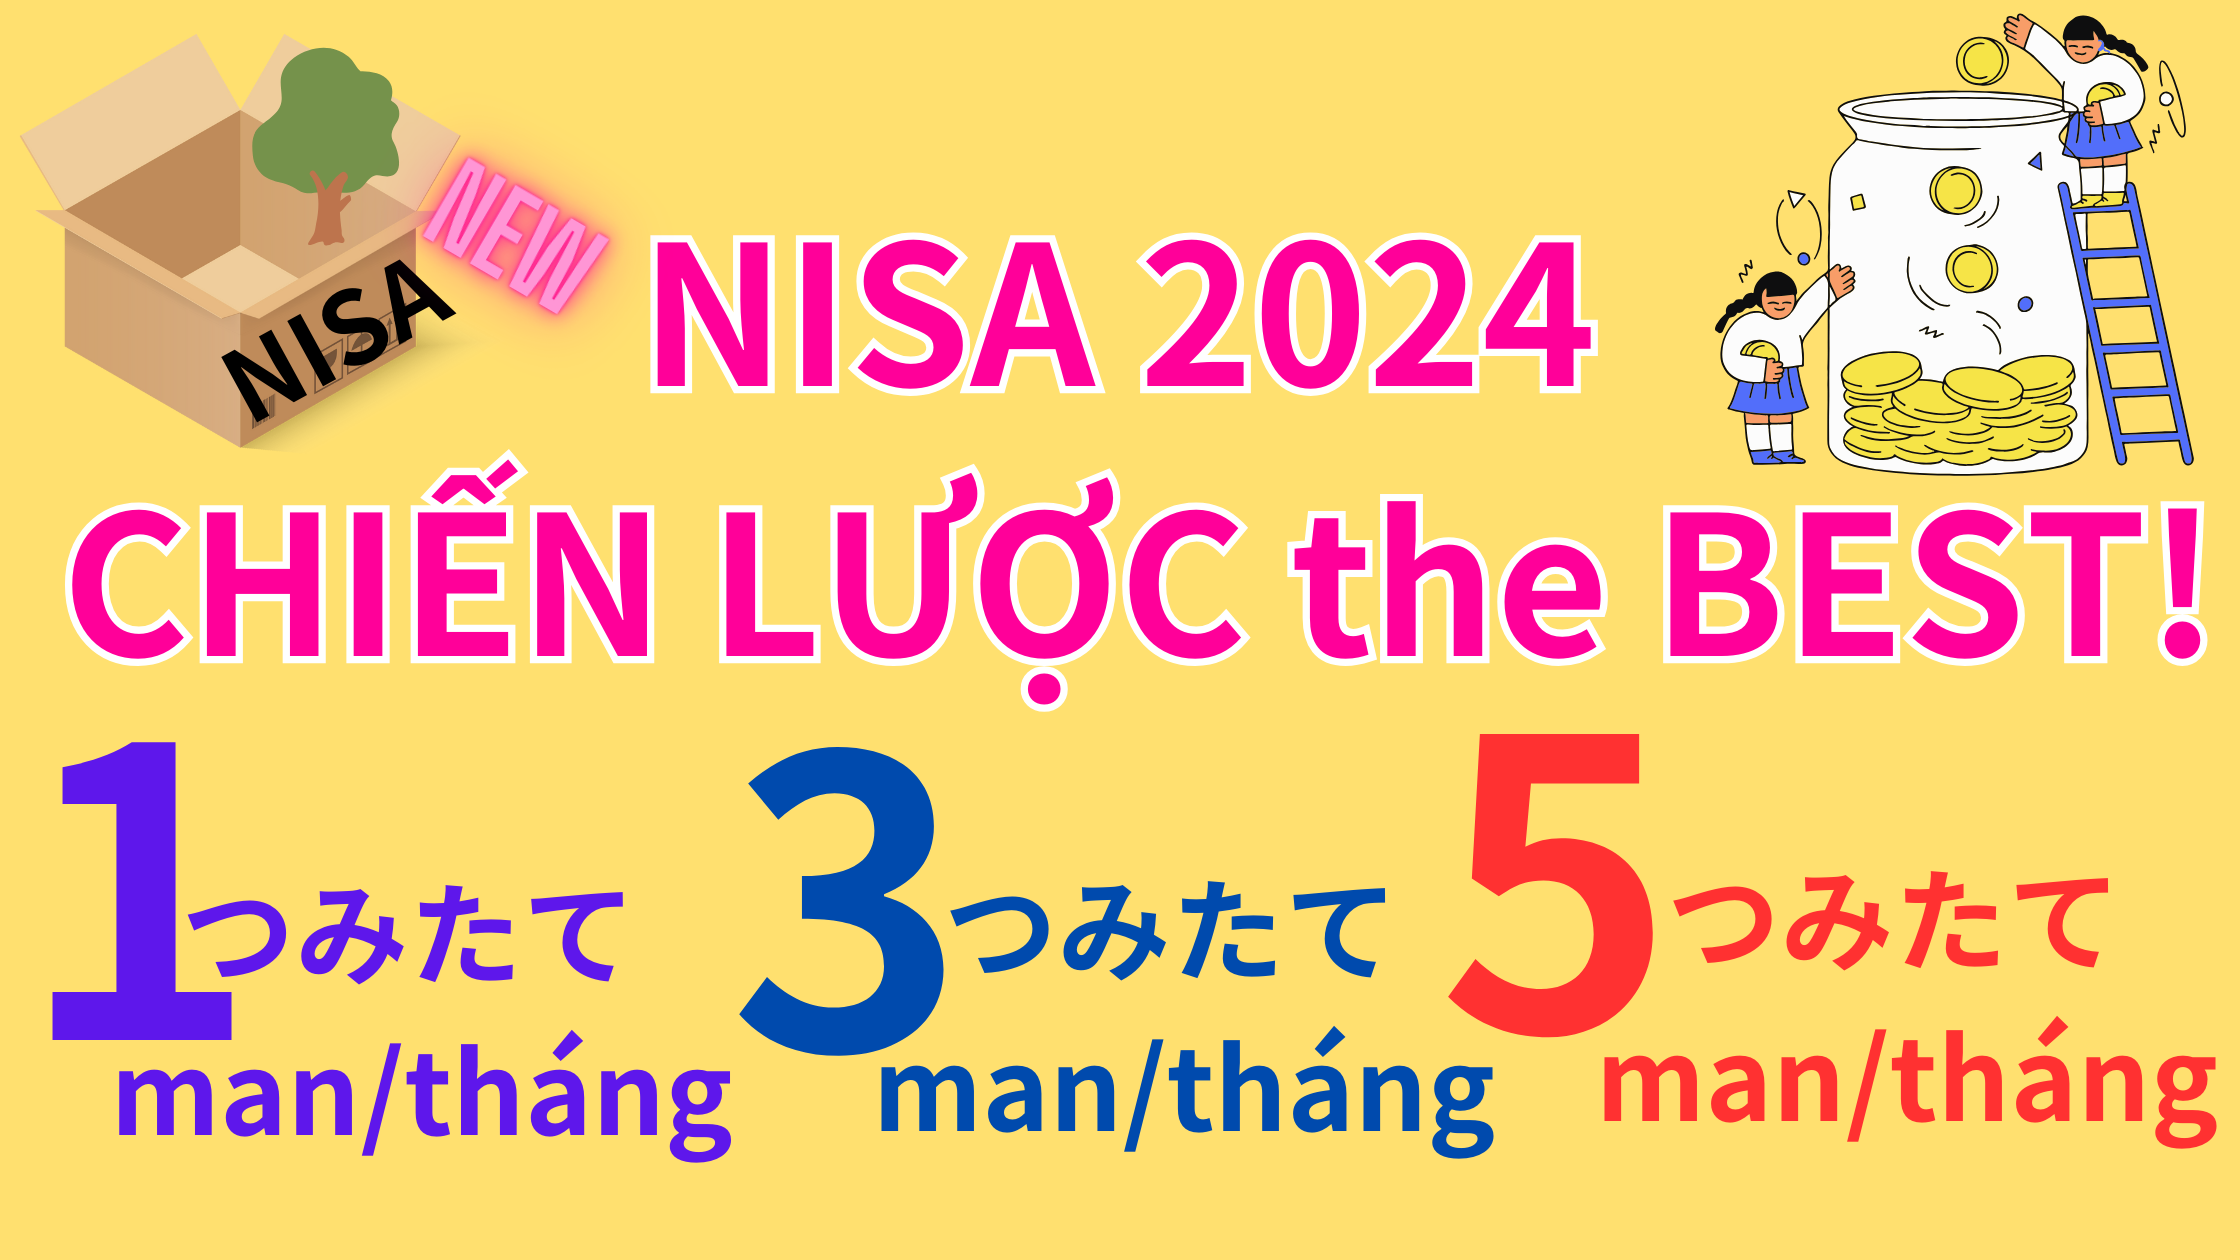 Đầu tư つみたて với NISA 2024 chiến lược the Best